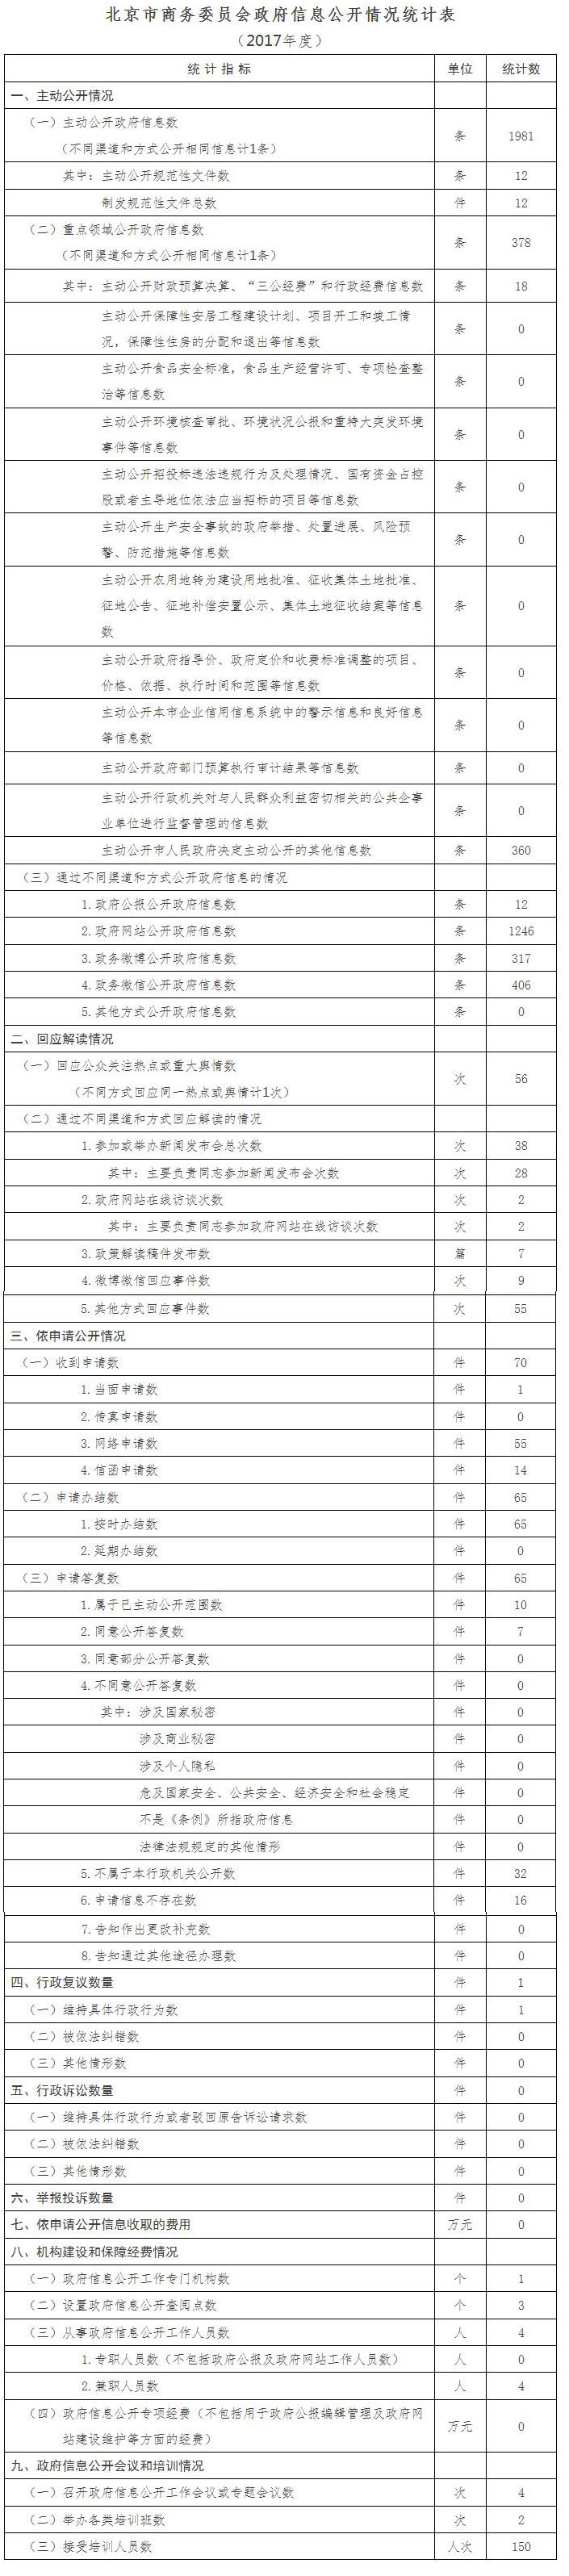 北京市商務委員會政府信息公開情況統計 (2017年度)